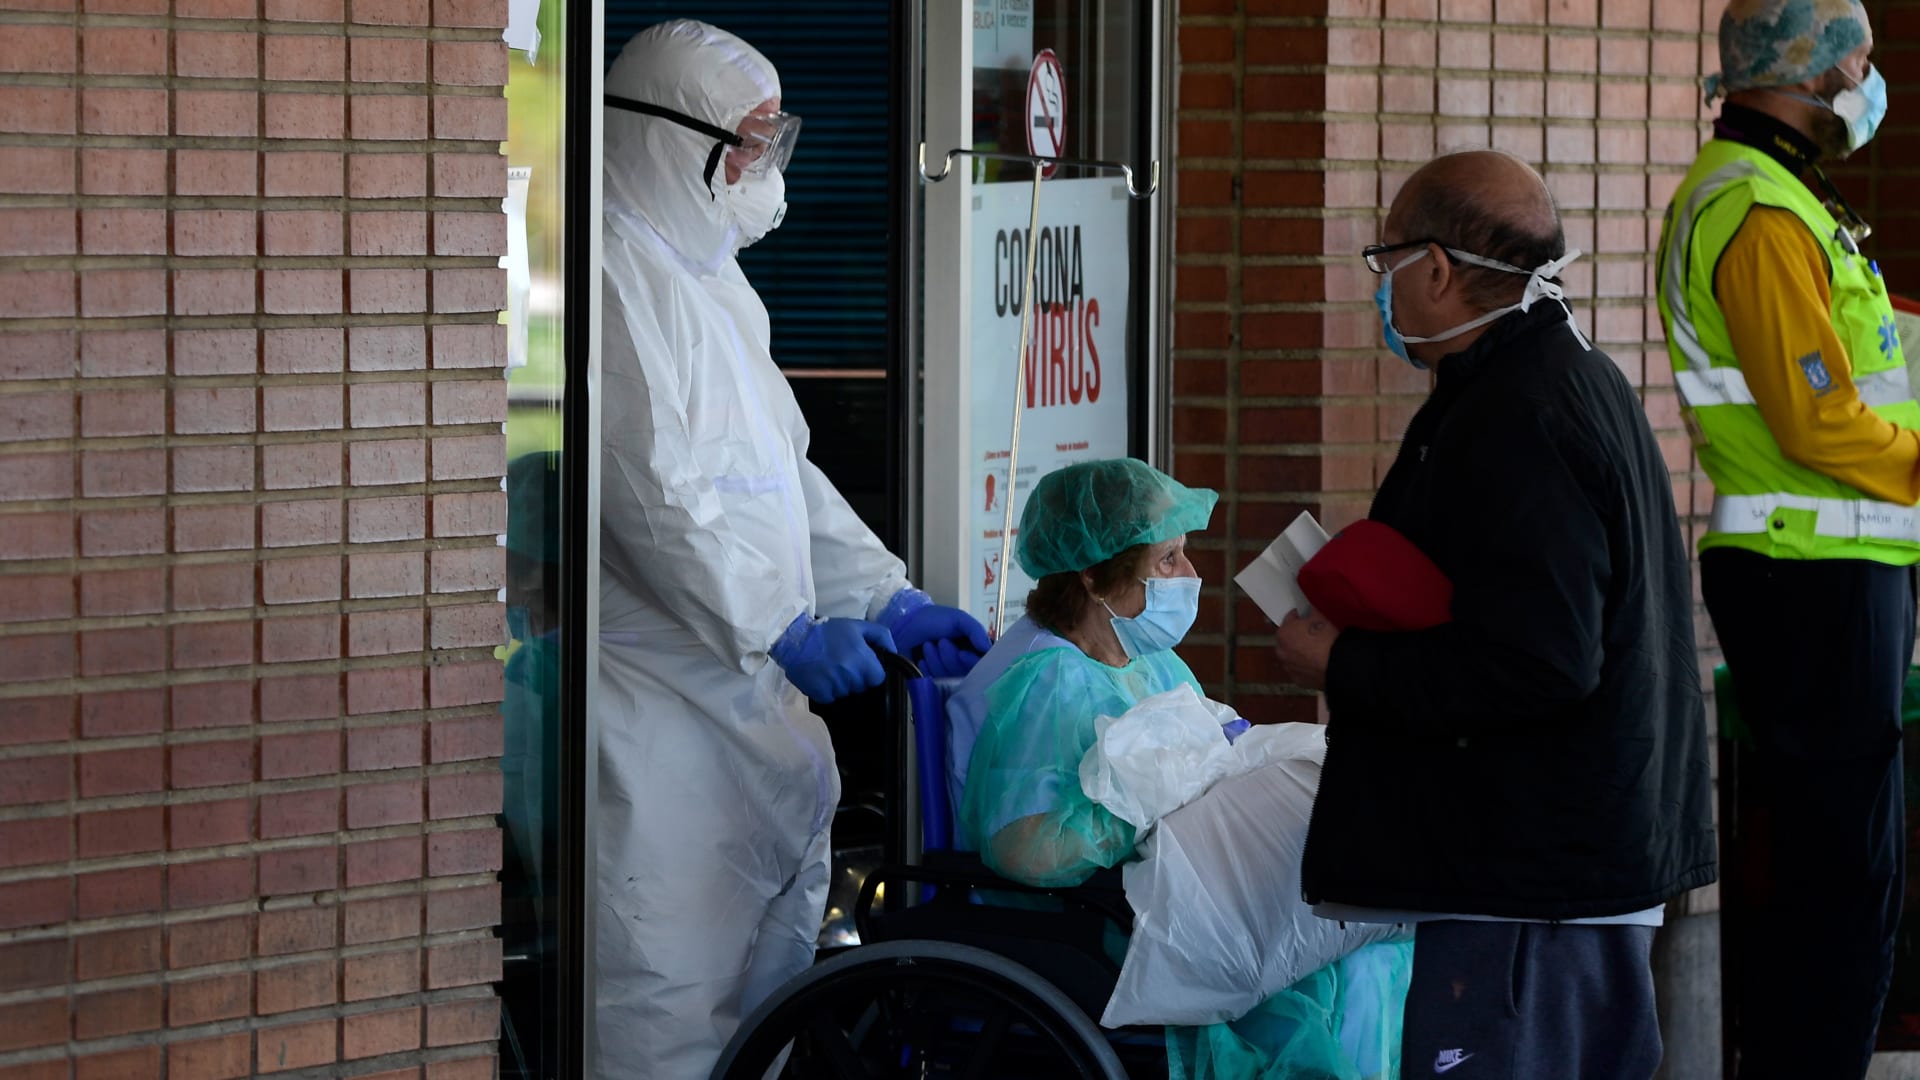 النضال ضد فيروس كورونا في إسبانيا.. طبيب يستخدم معدات غوص لصنع أقنعة طبية